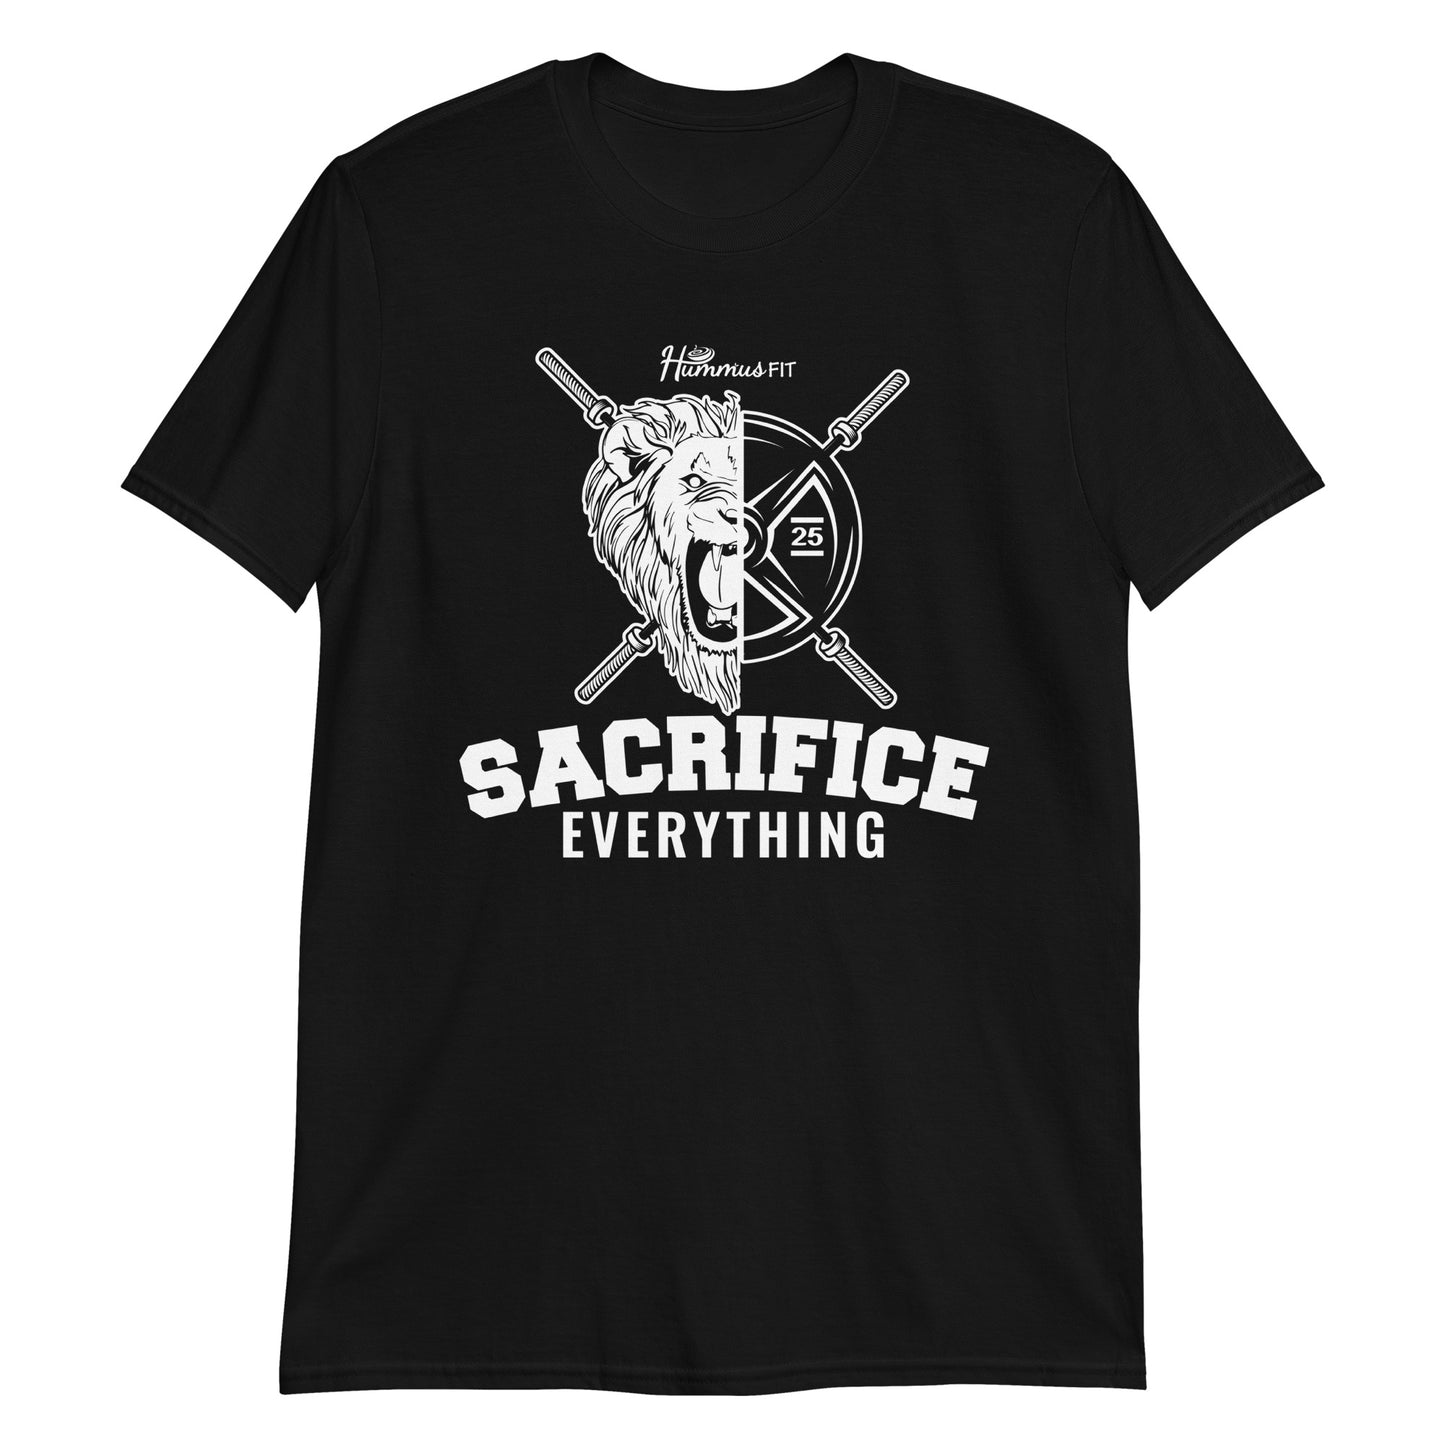 OG Sacrifice - Camiseta unisex Softstyle (Negro)